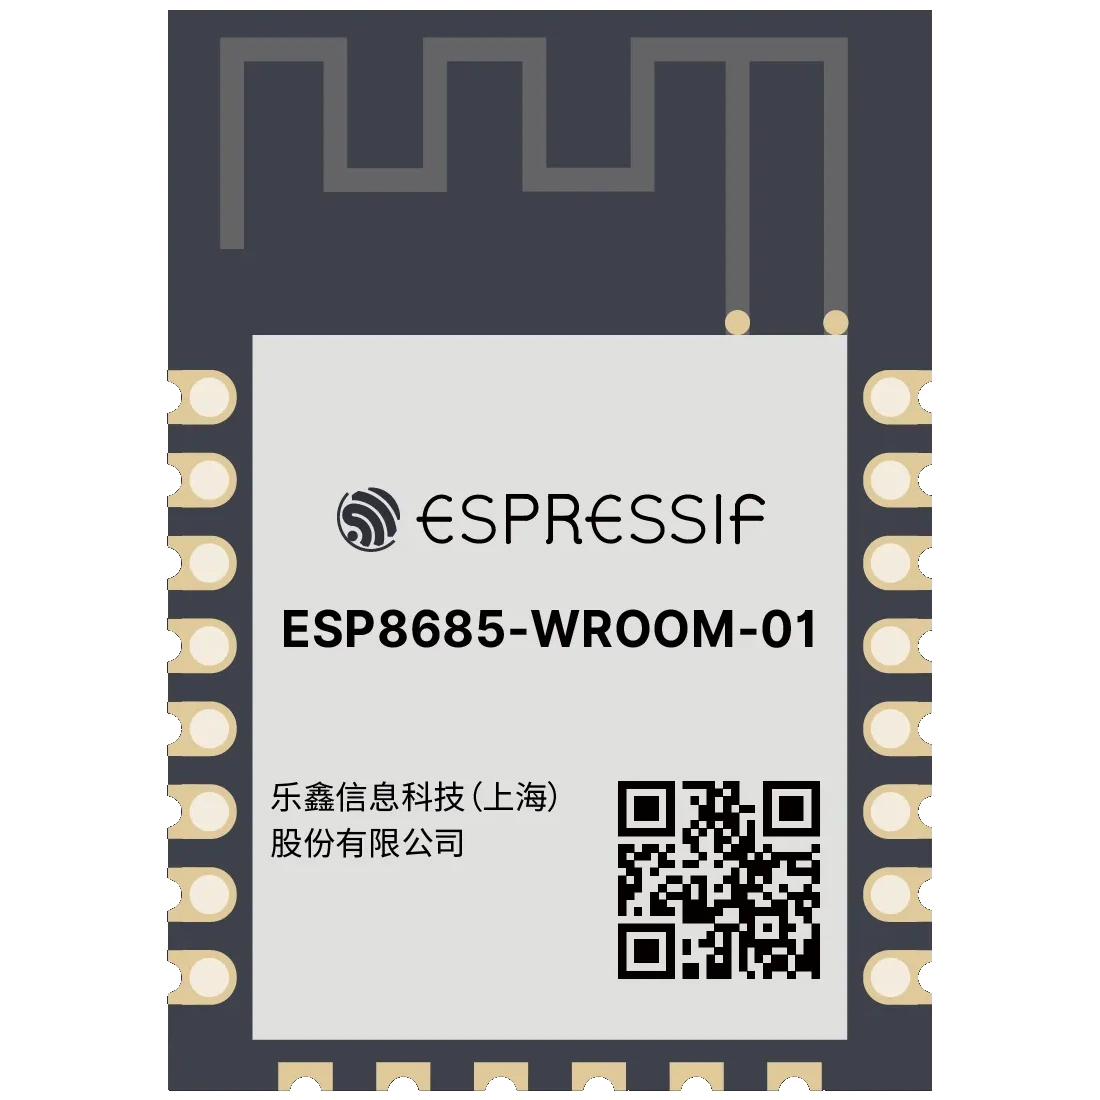 ESP8685-WROOM-01 ESP32-C3 ESP-12 Compatible